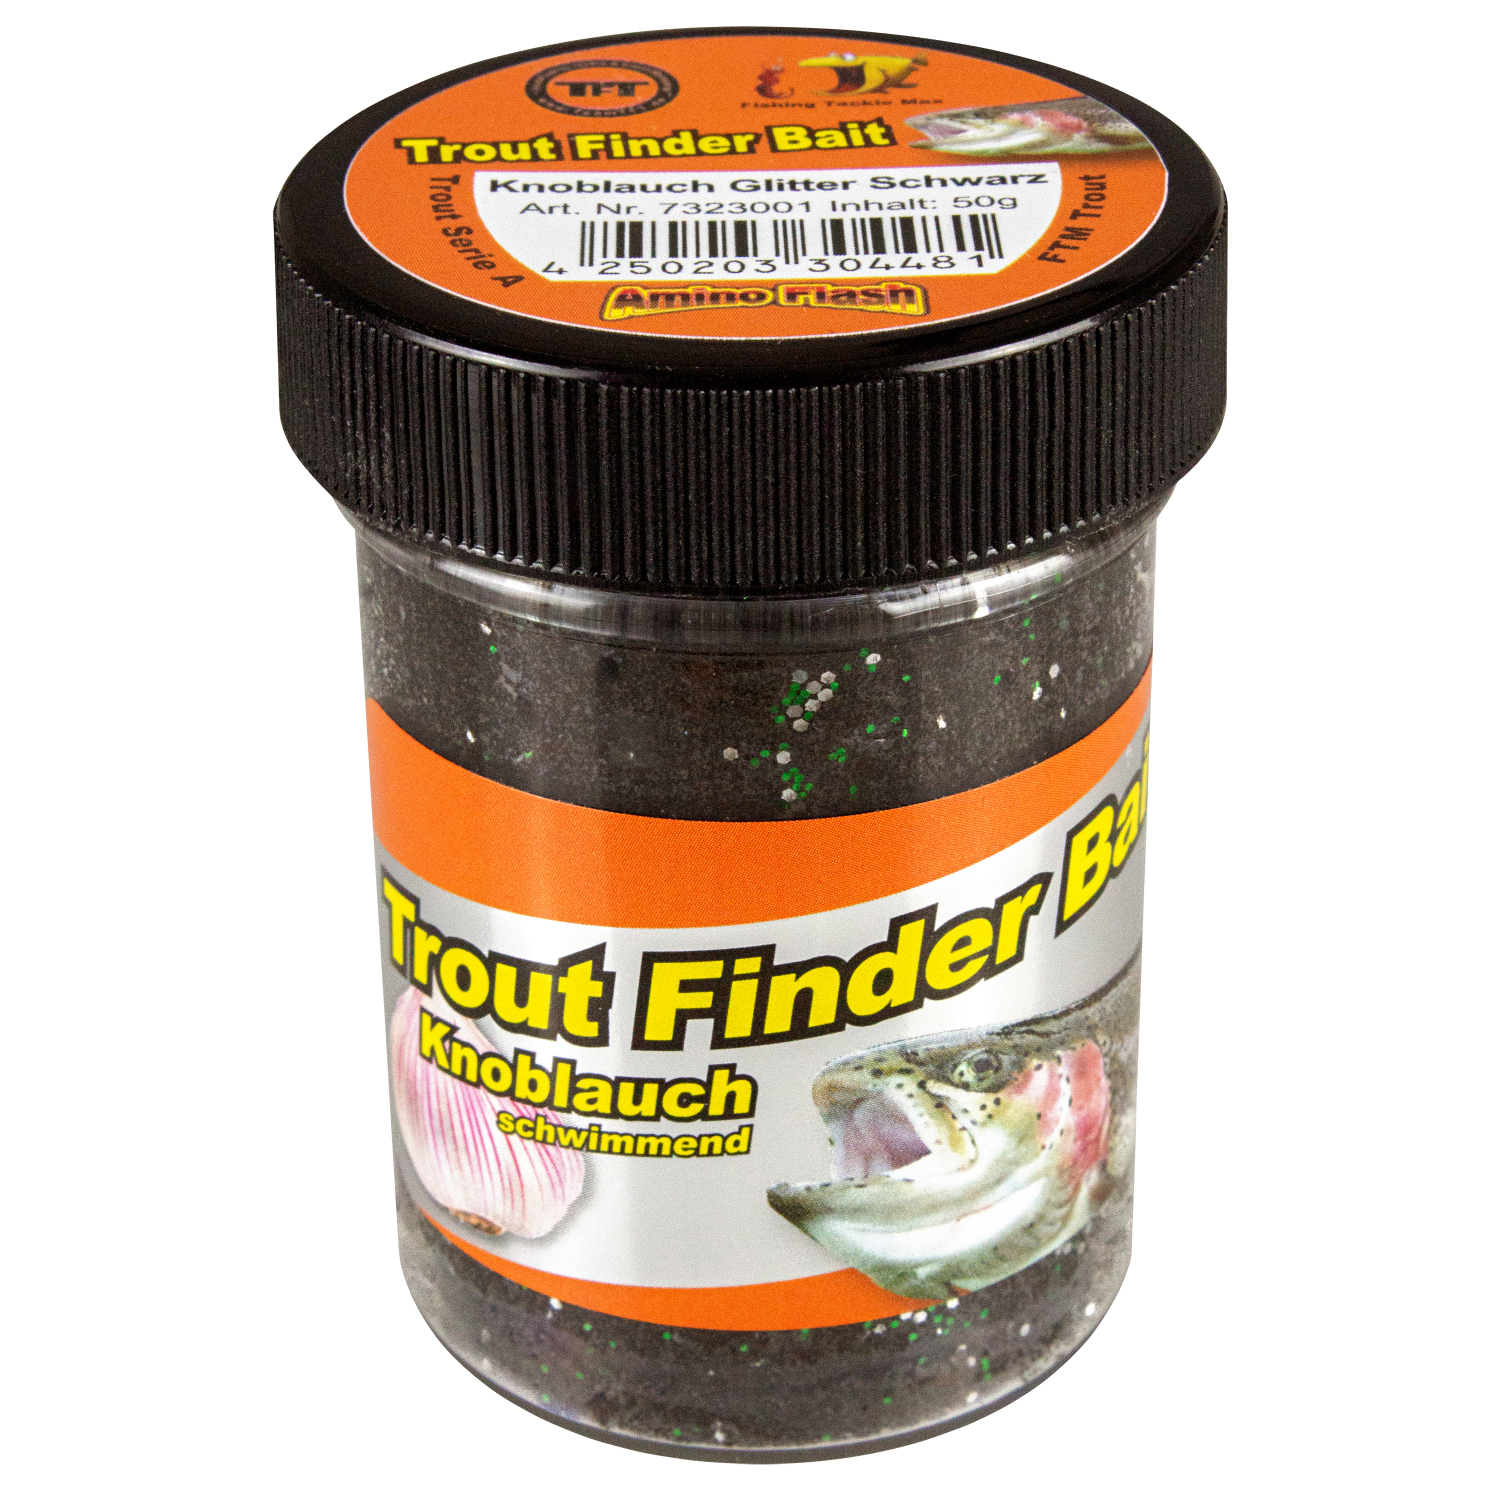 FTM Trout Dough Trout Finder Bait floating (black, garlic) 